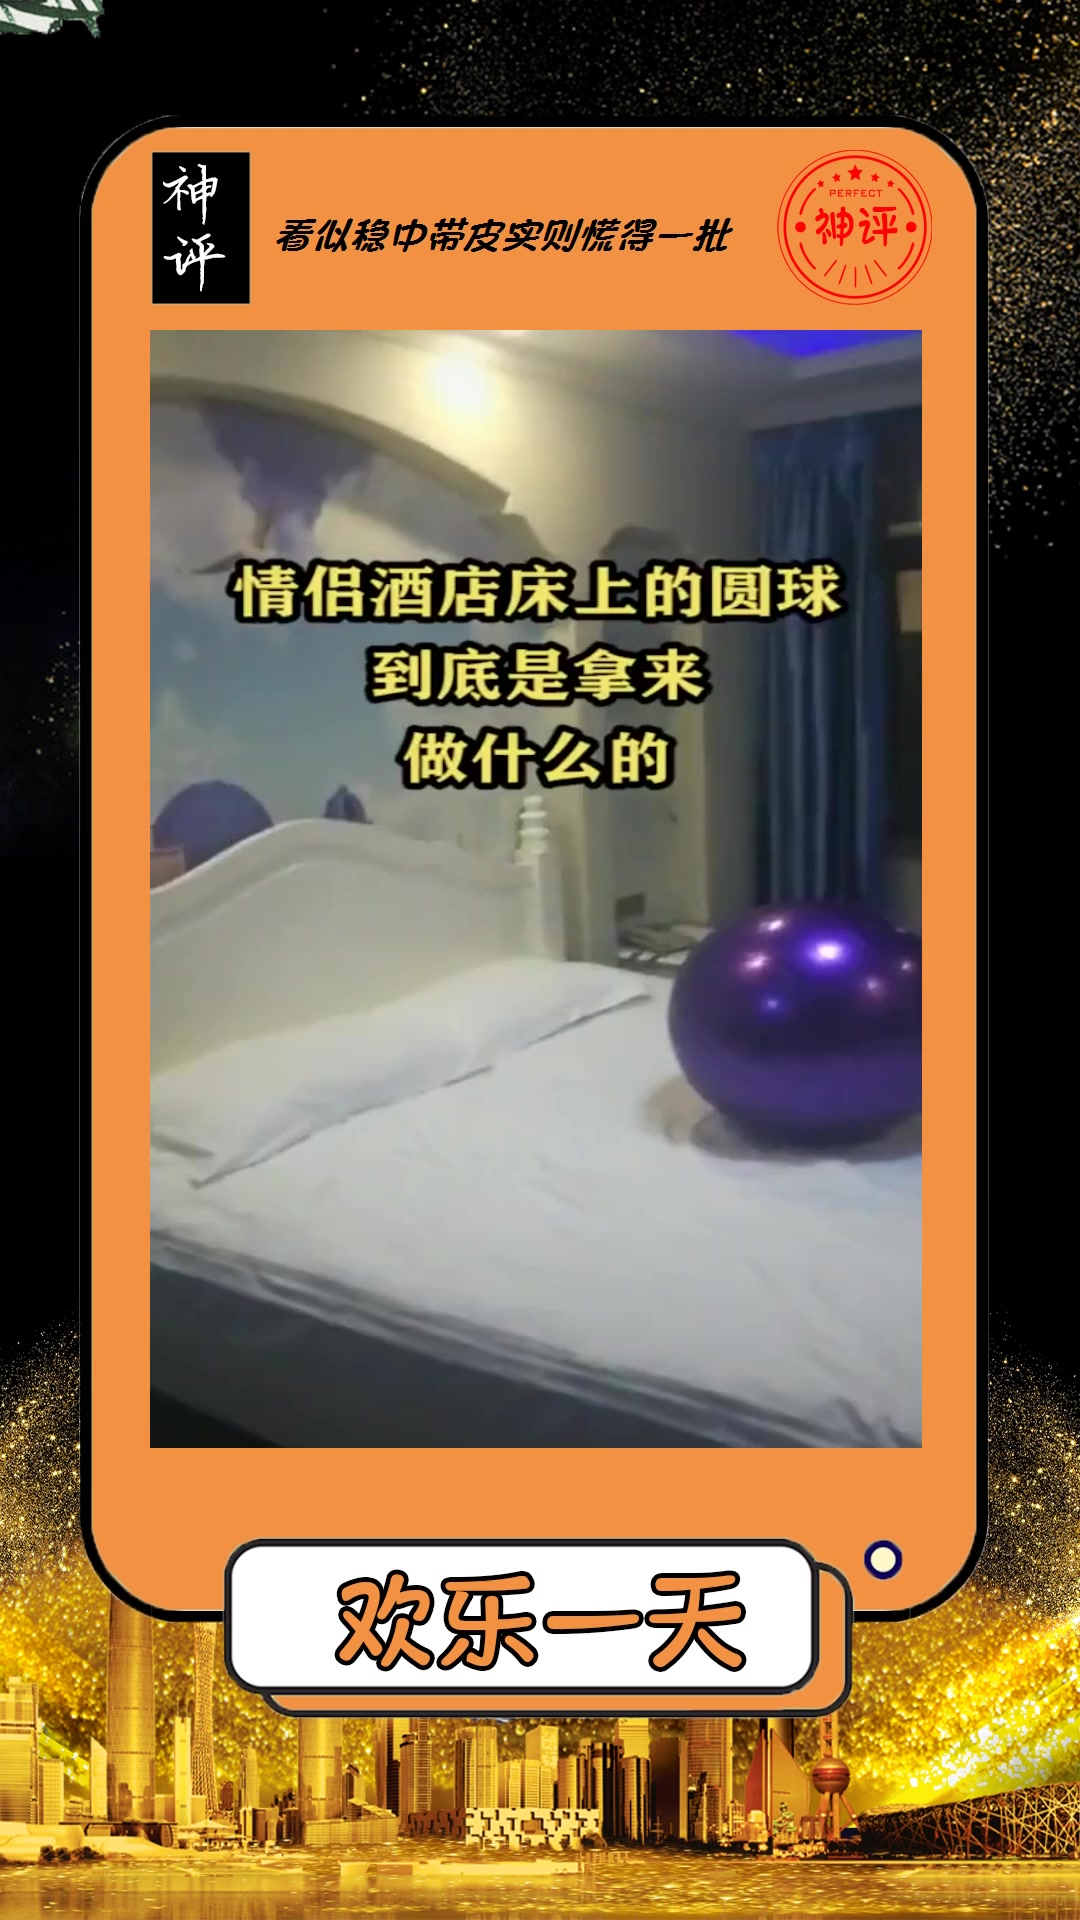 搞笑情侣酒店床上的圆球到底是用来做什么的